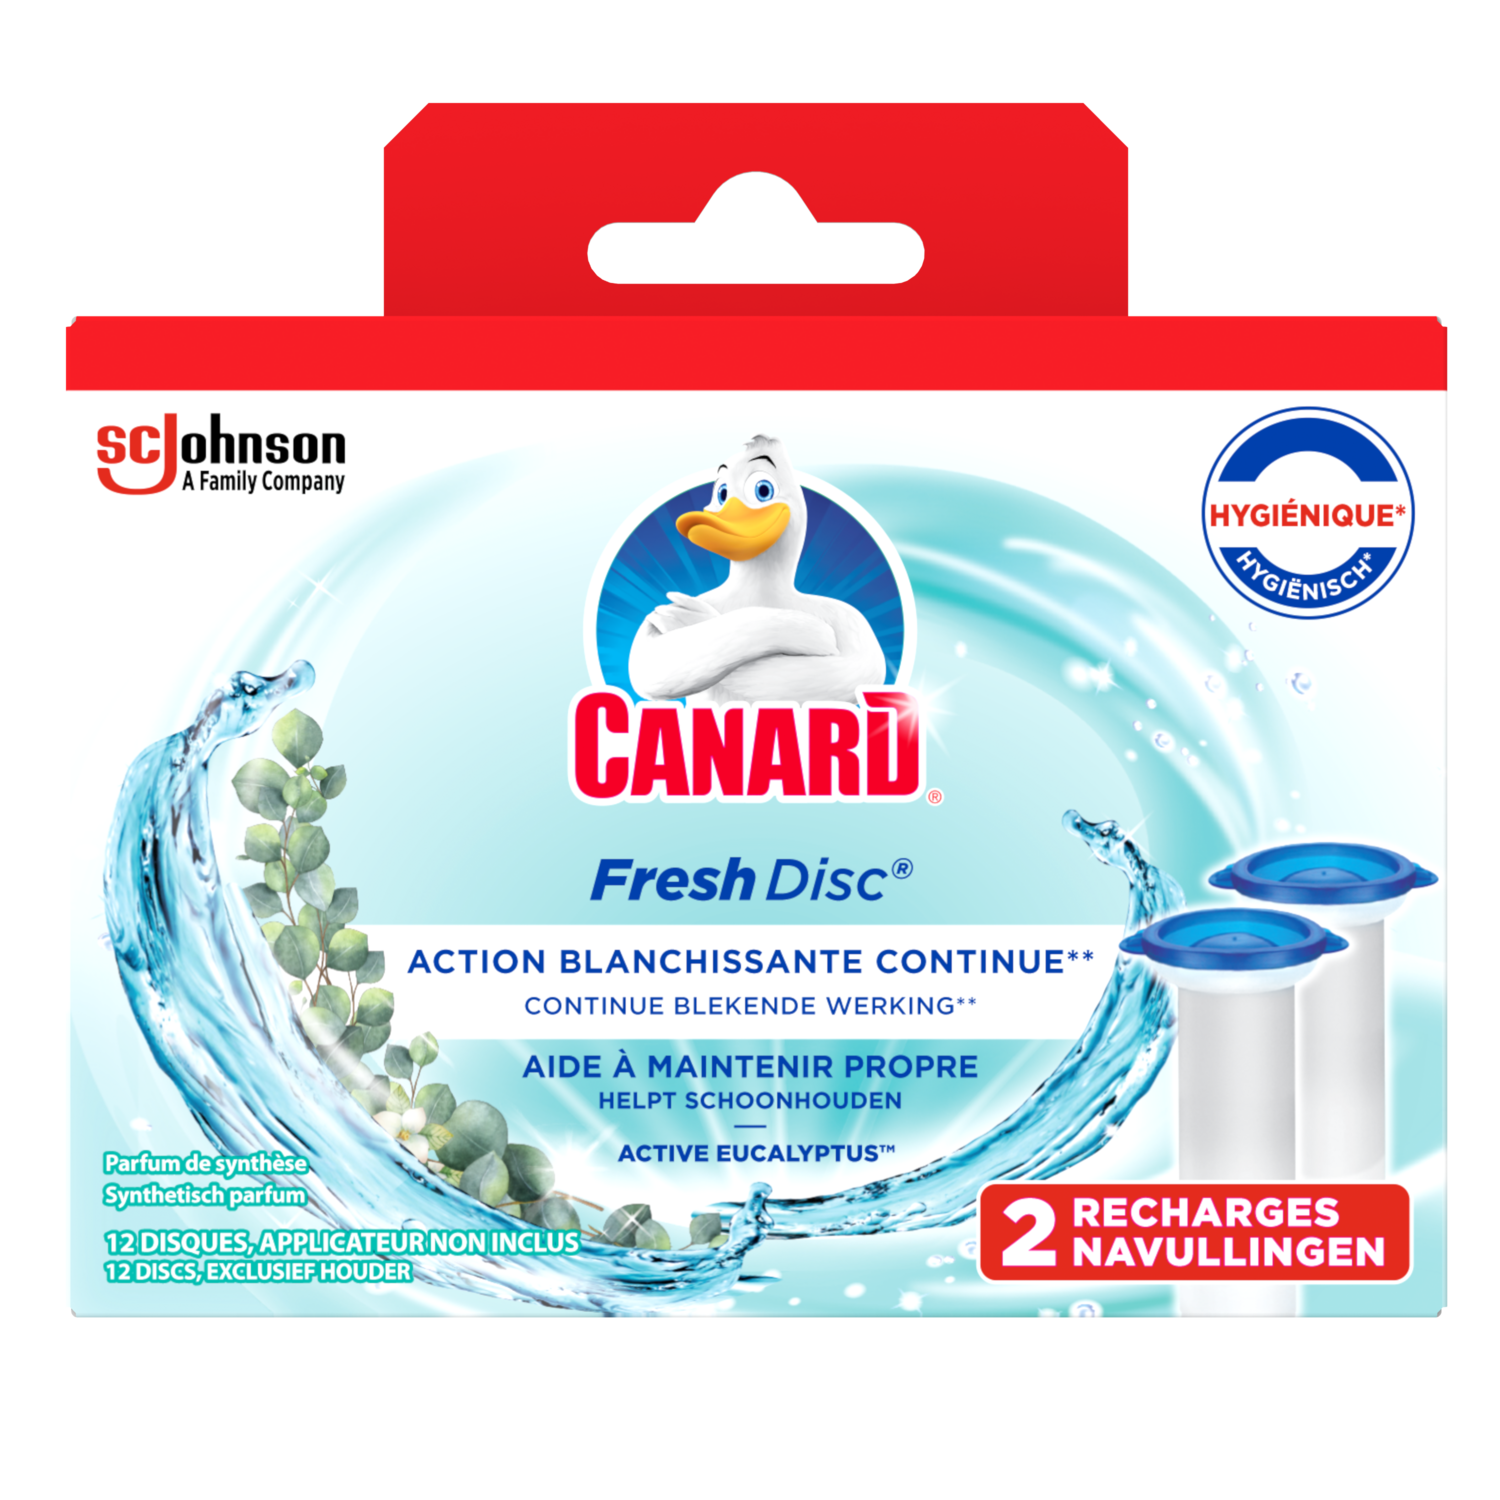 Canard Fresh Disc Recharges Fraîcheur Lavande – Bloc Sans Cage